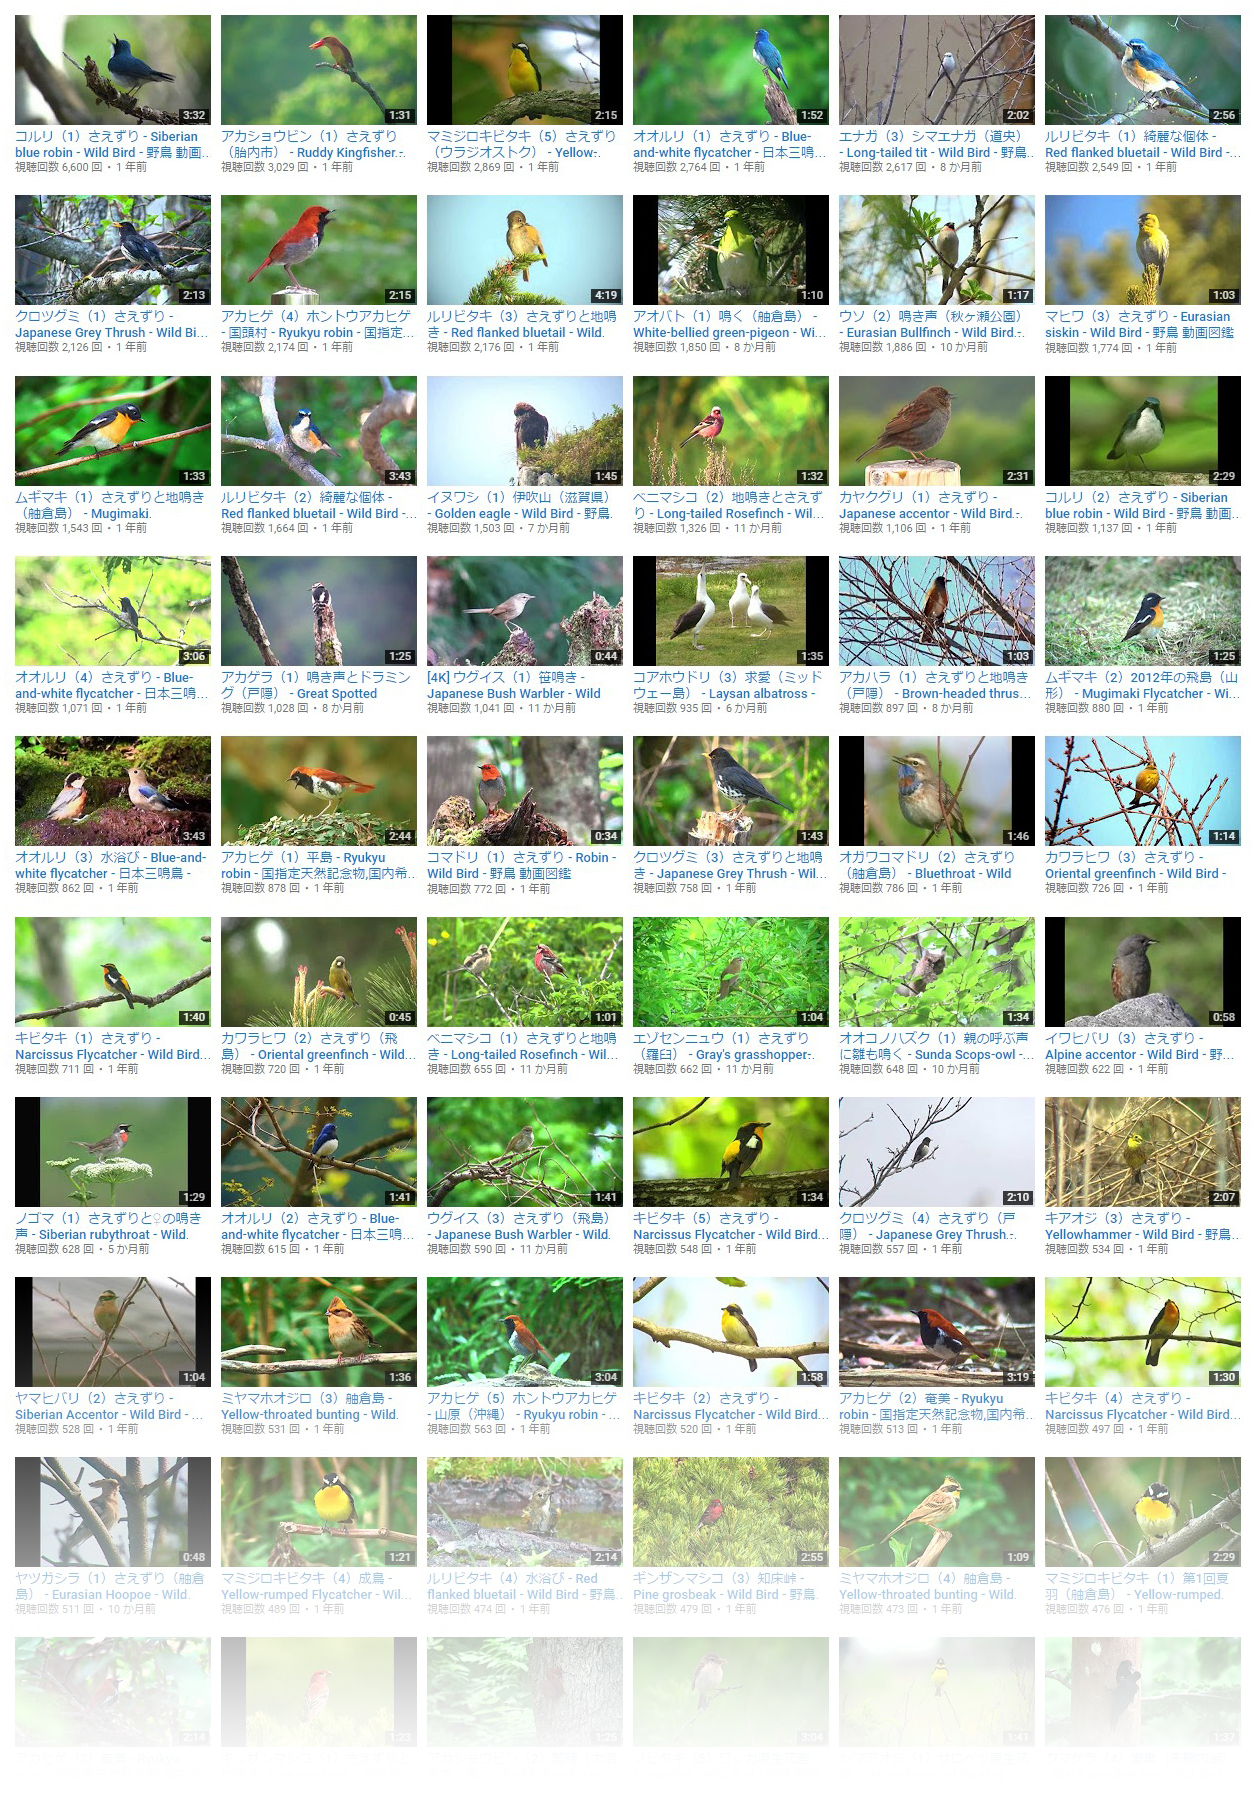 『野鳥動画図鑑』YouTubeチャンネル動画一覧から作成（200種到達時）